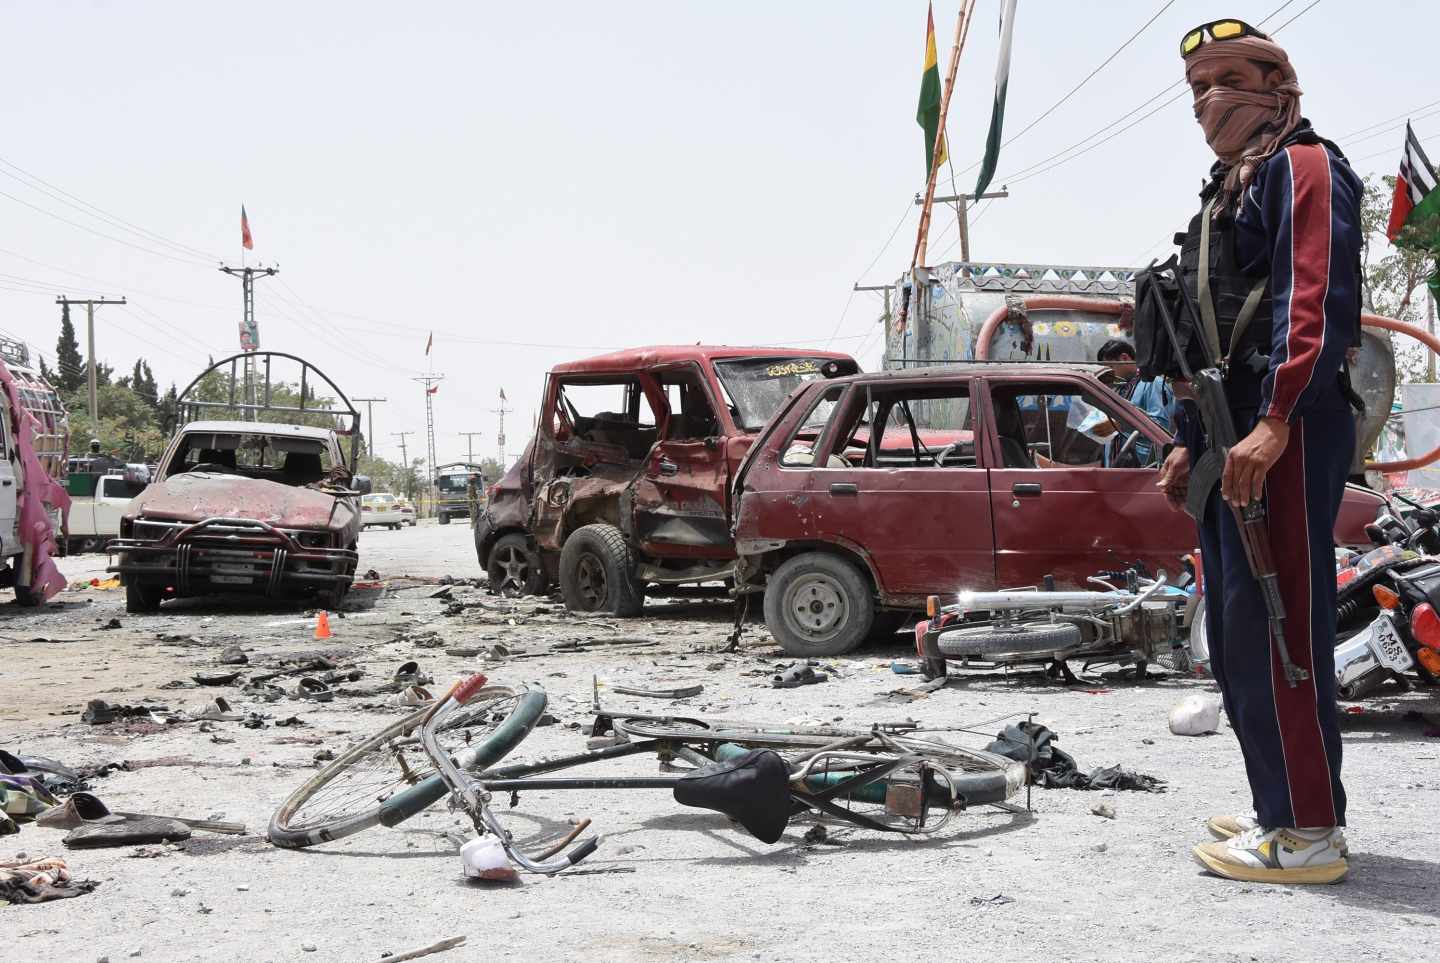 Escenario de un atentado terrorista en Quetta, Pakistán, en la jornada electoral.